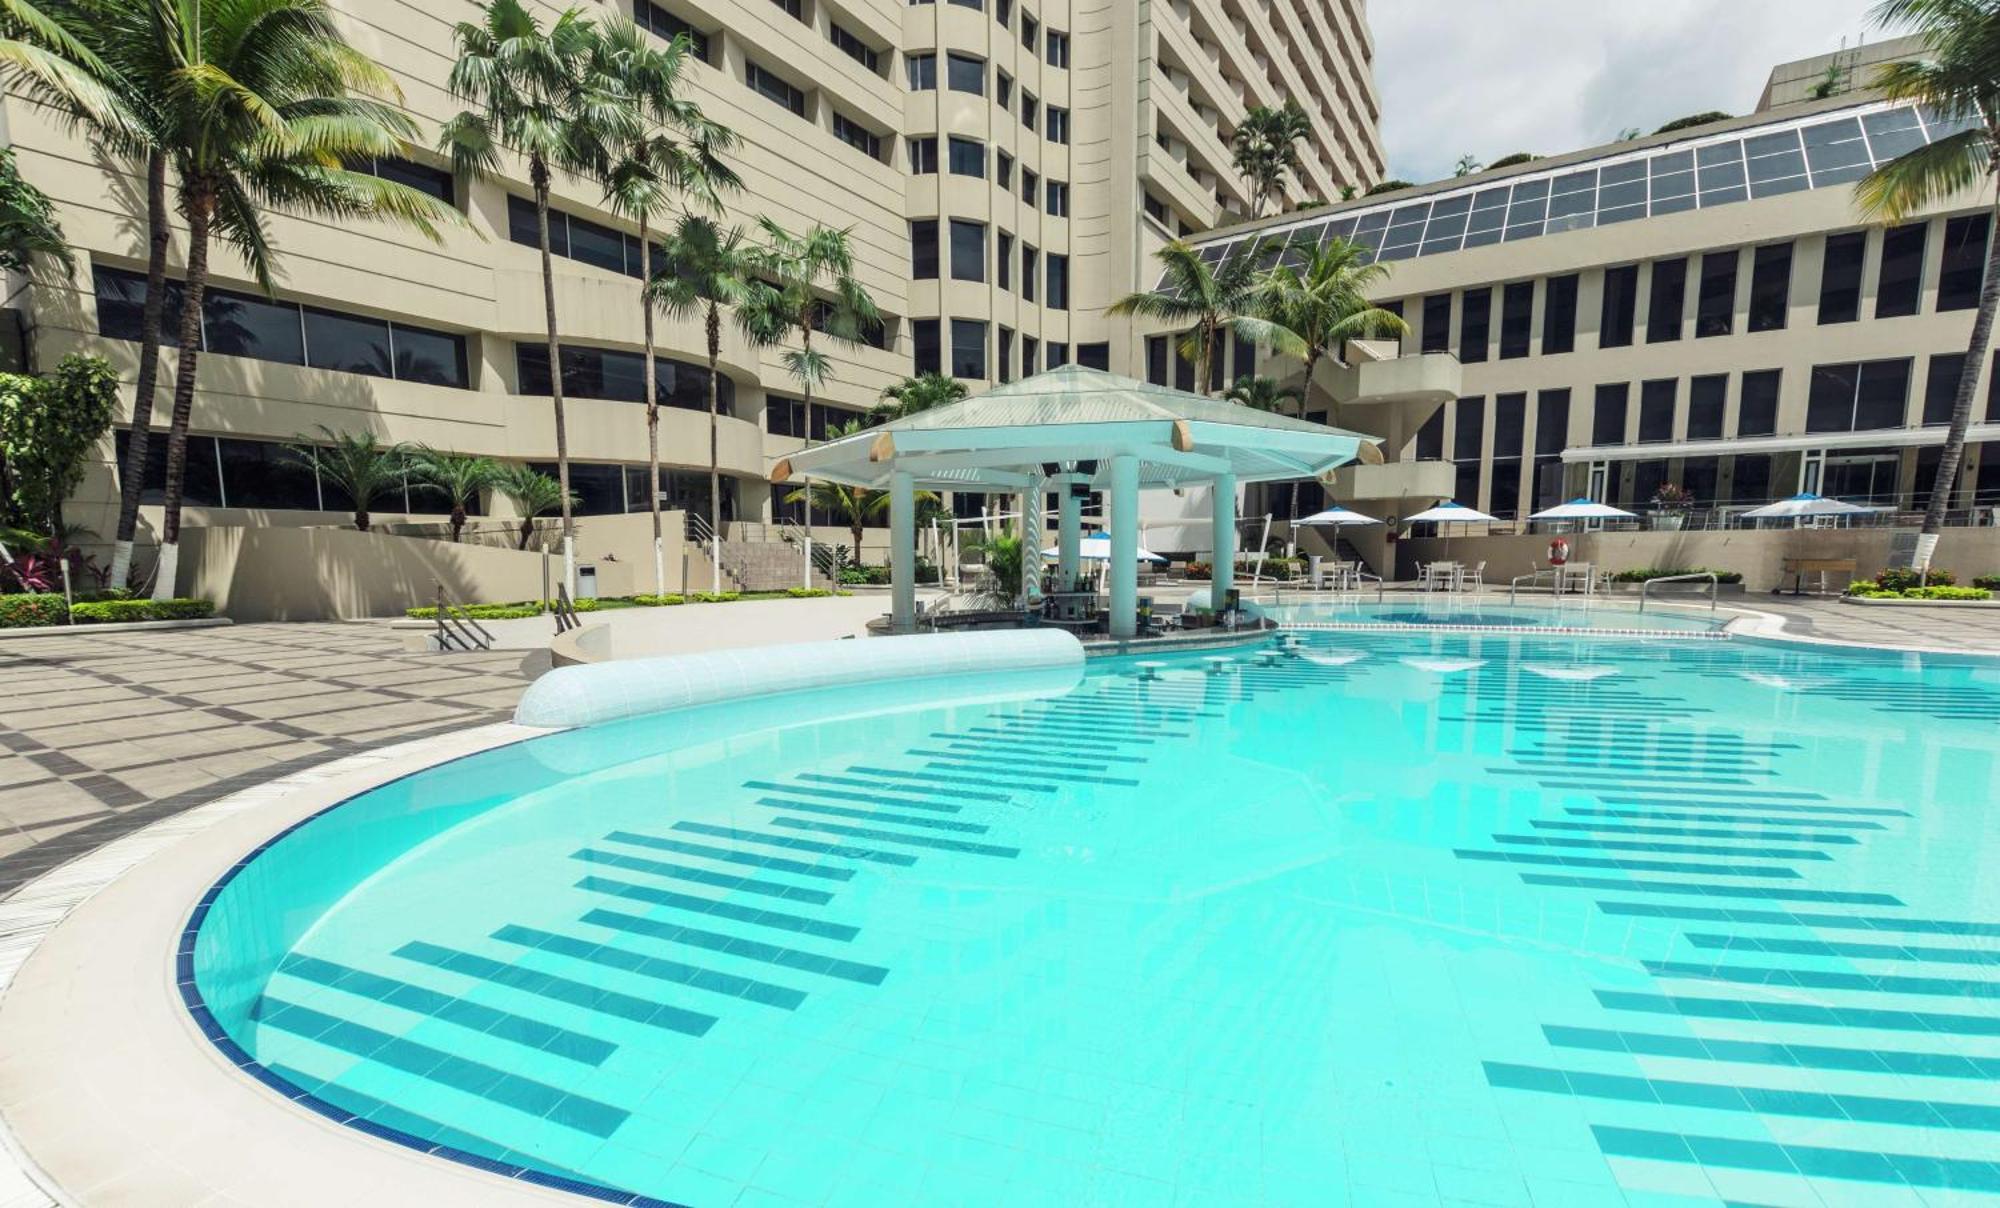 Hilton Colon Guayaquil Hotel Luaran gambar